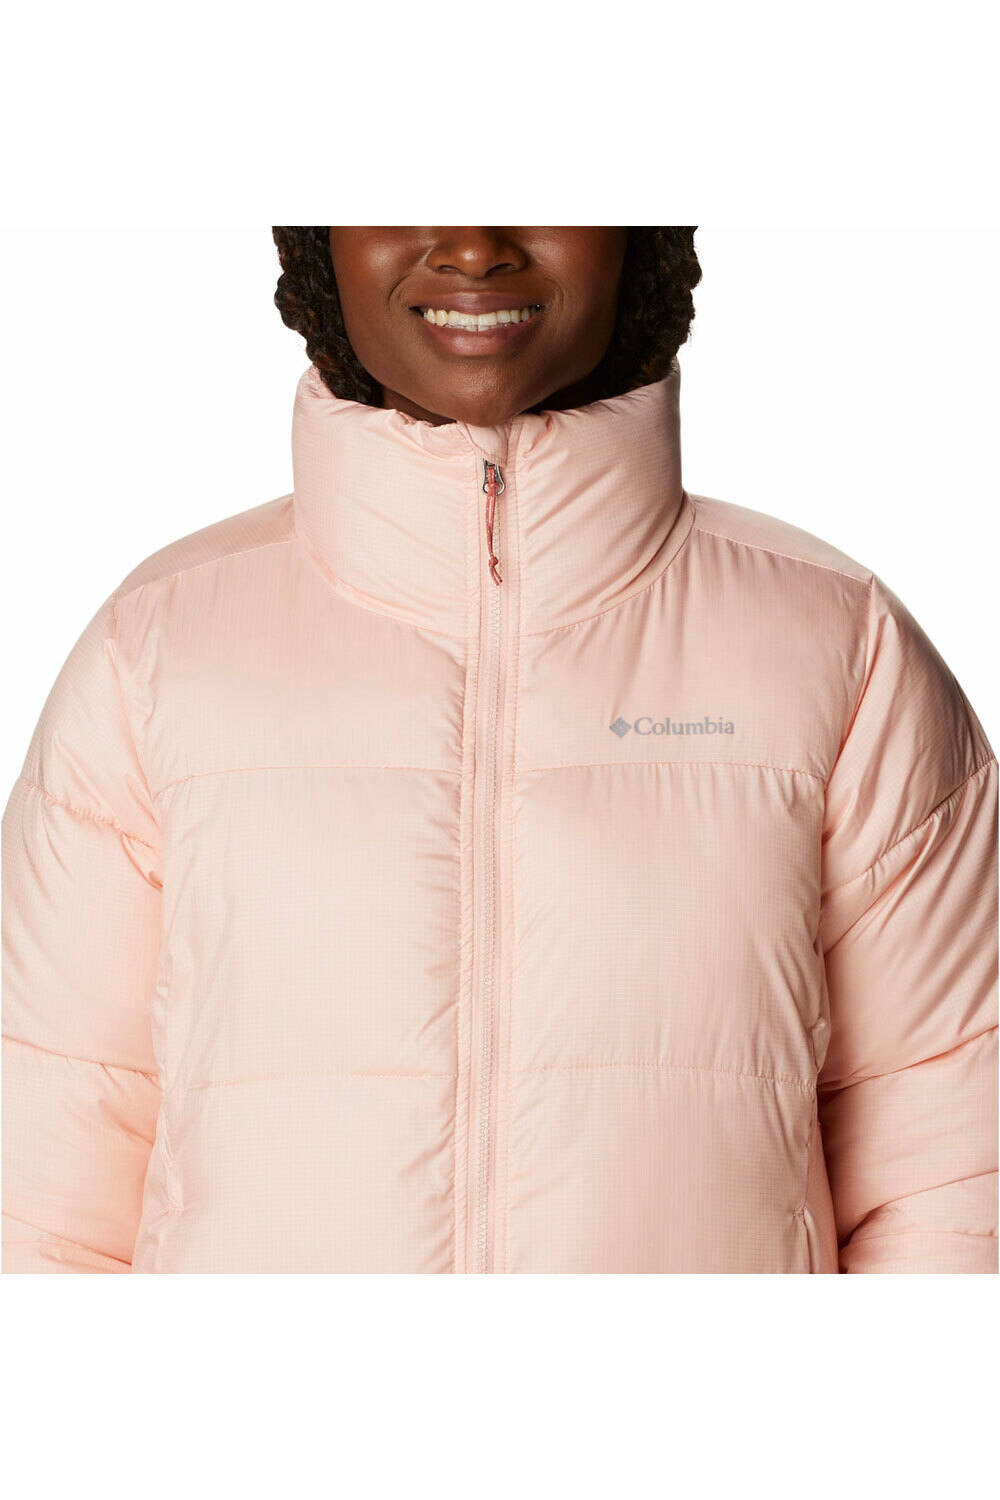 Comprar en oferta Columbia Puffect Jacket Women peach blossom